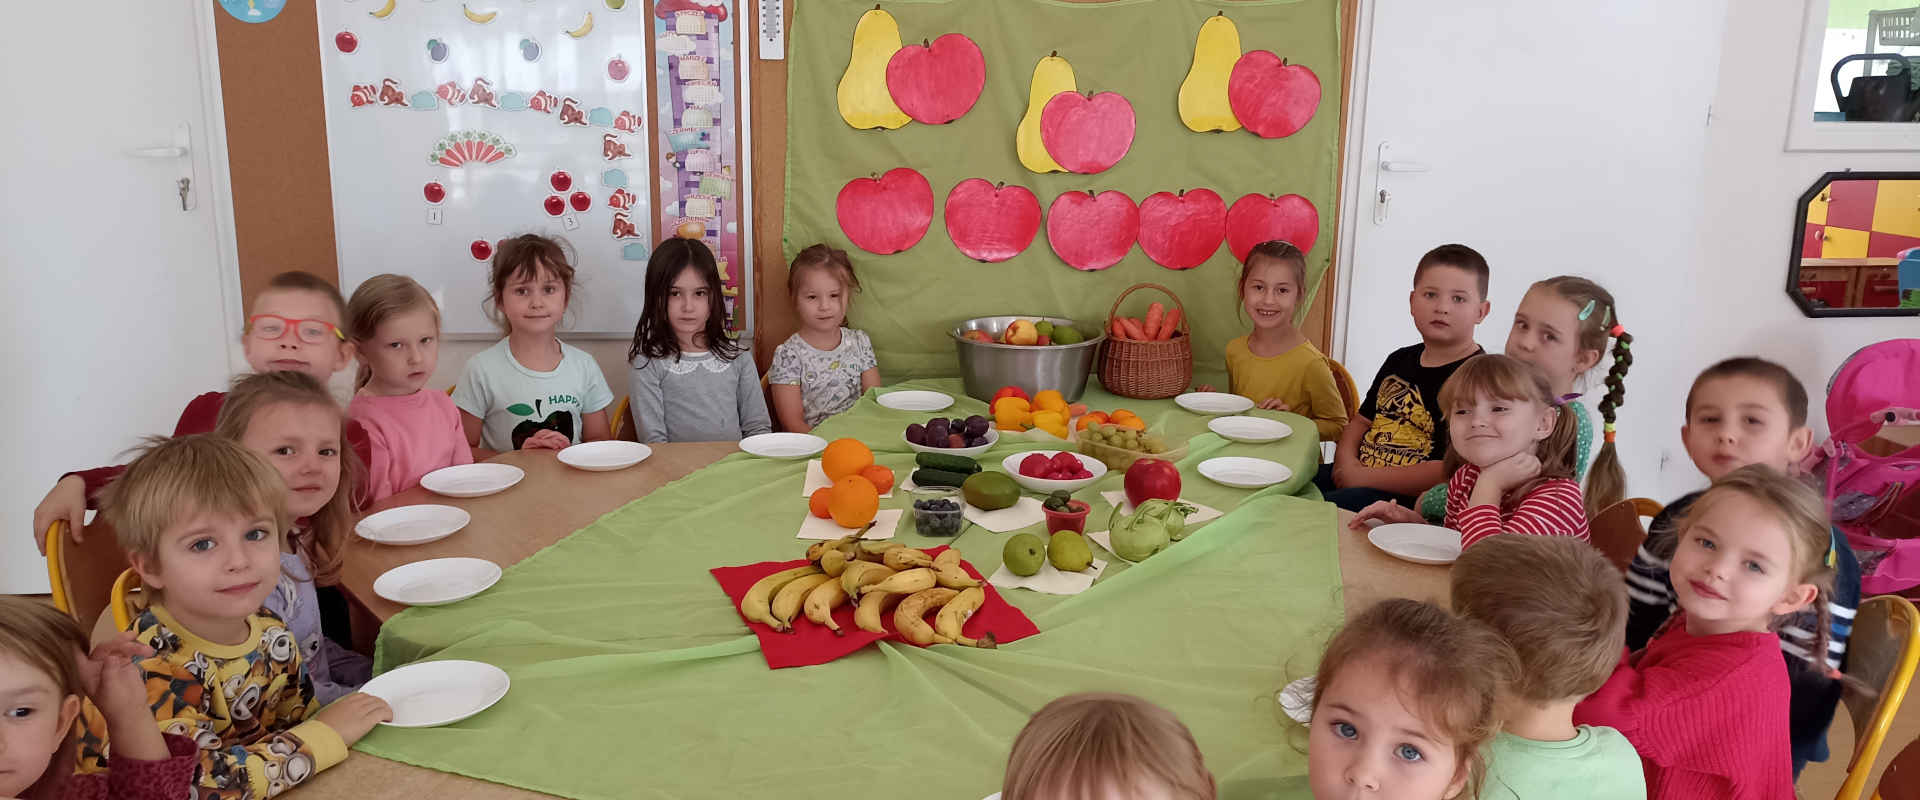 Dzieci z owocami